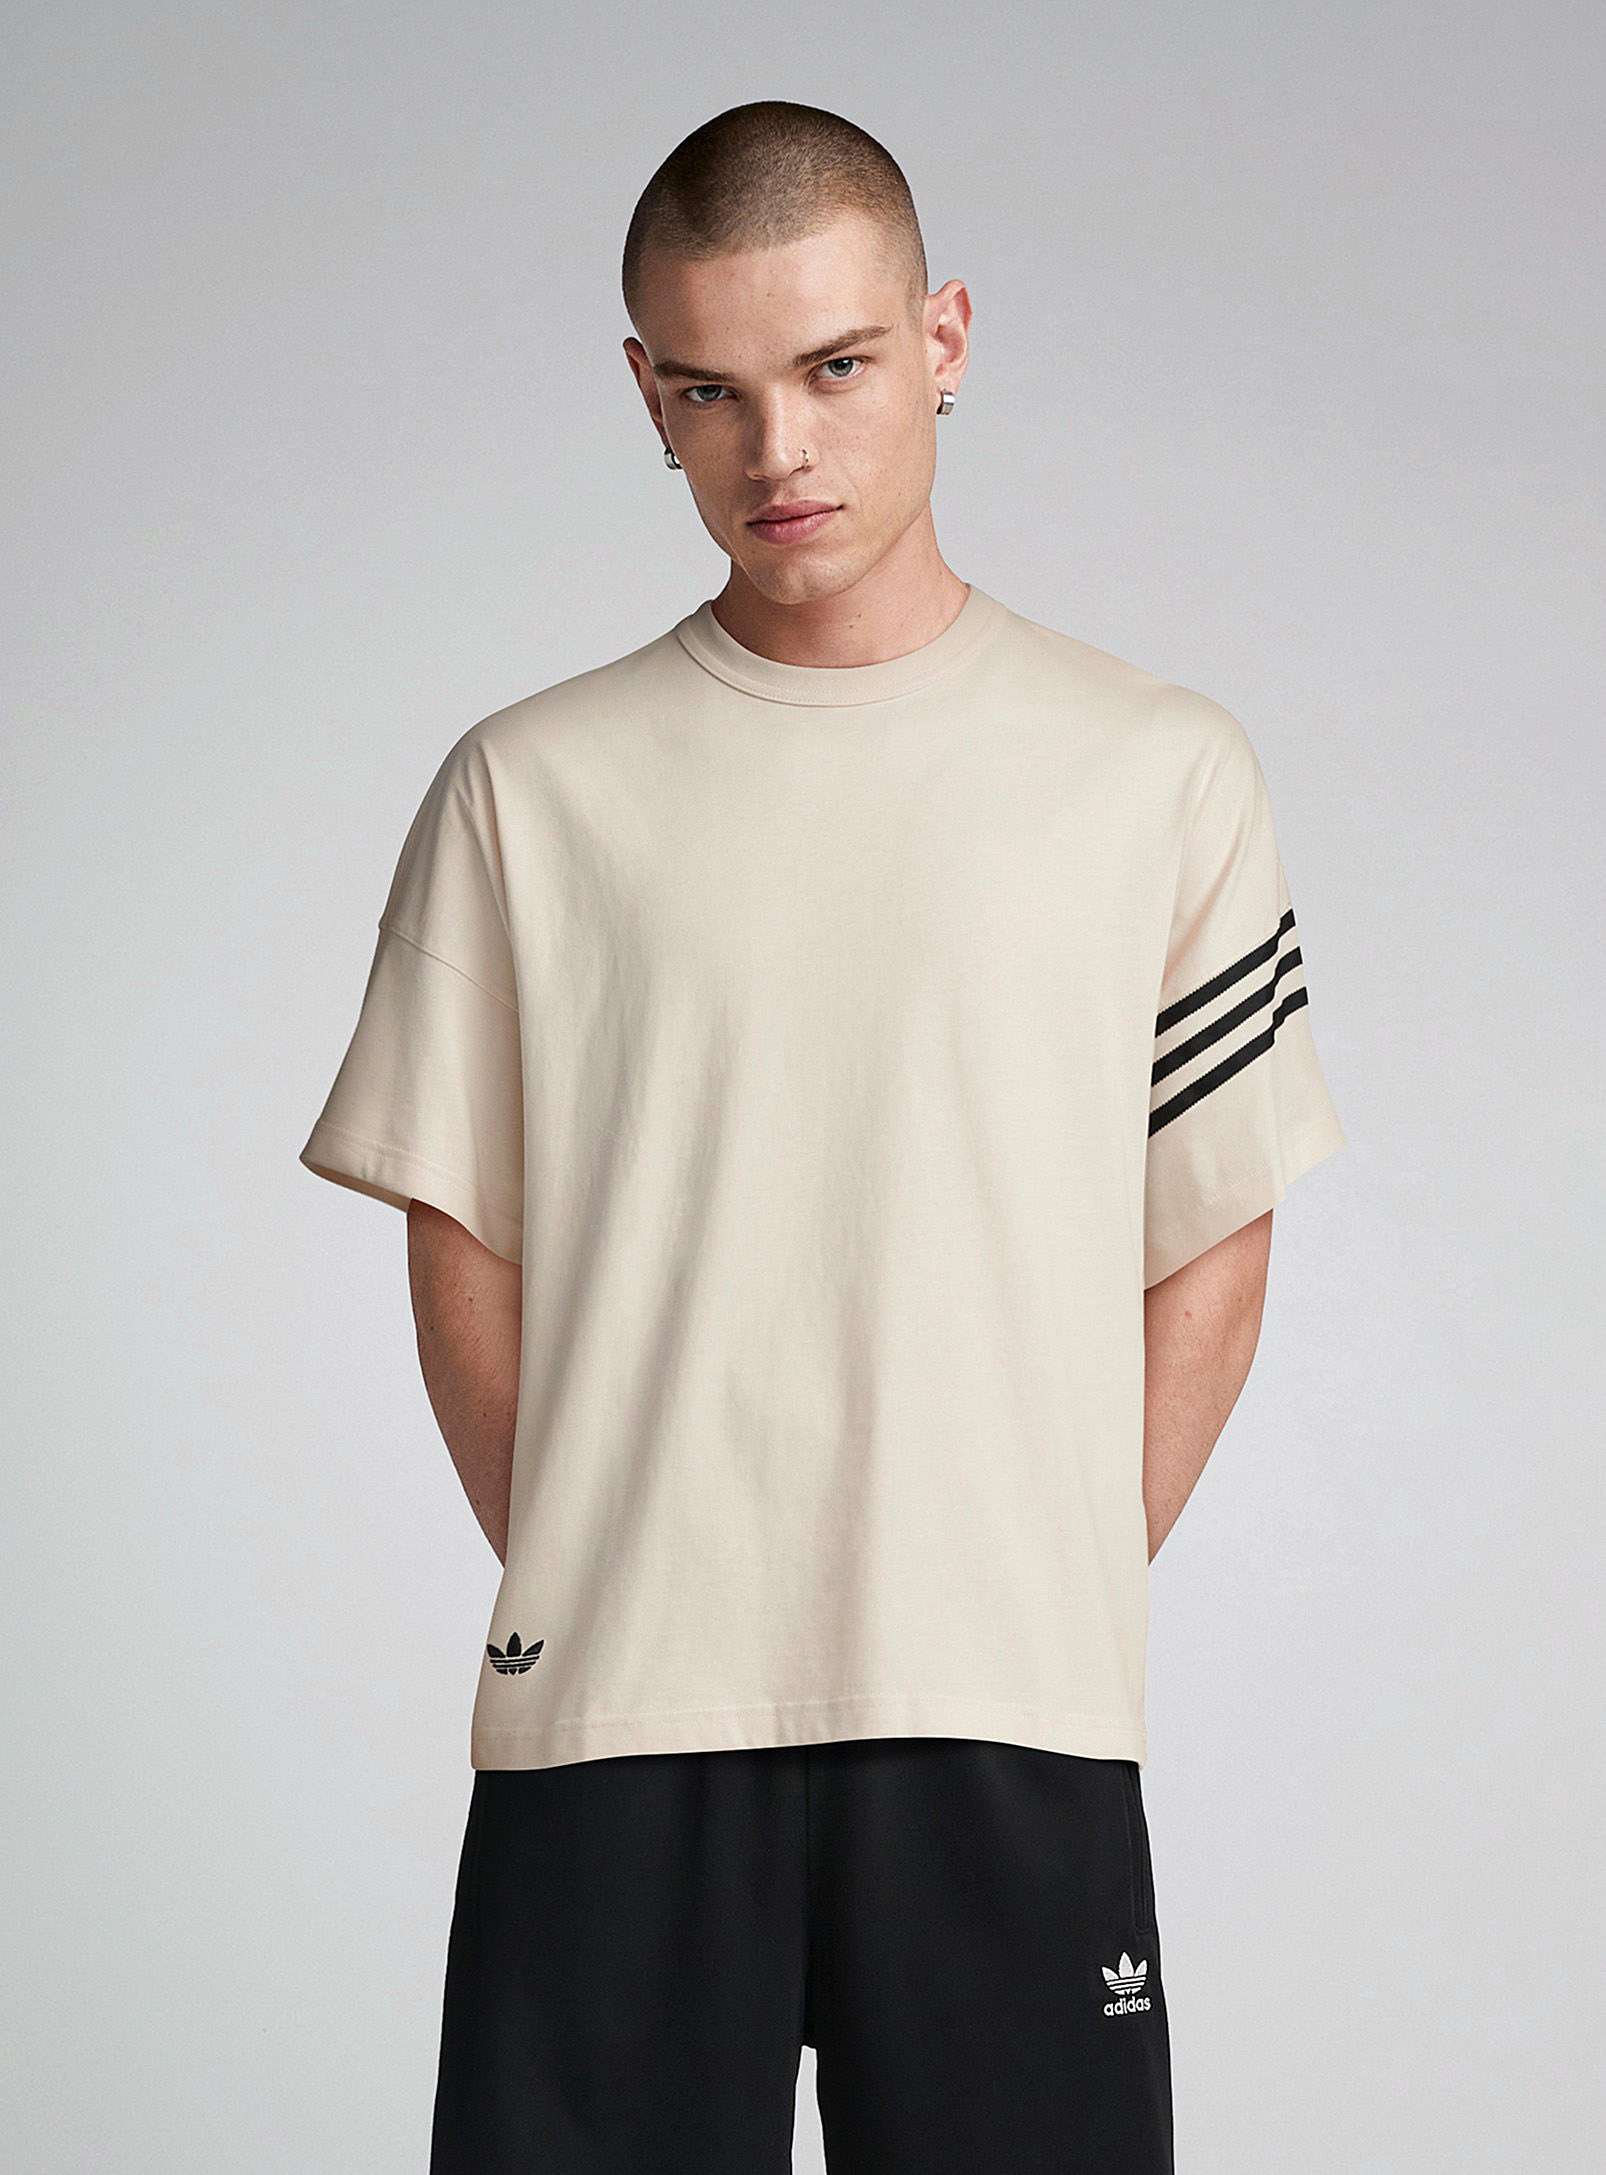 Adidas Originals Adicolor Neuclassics Cream T-shirt In Cream Beige